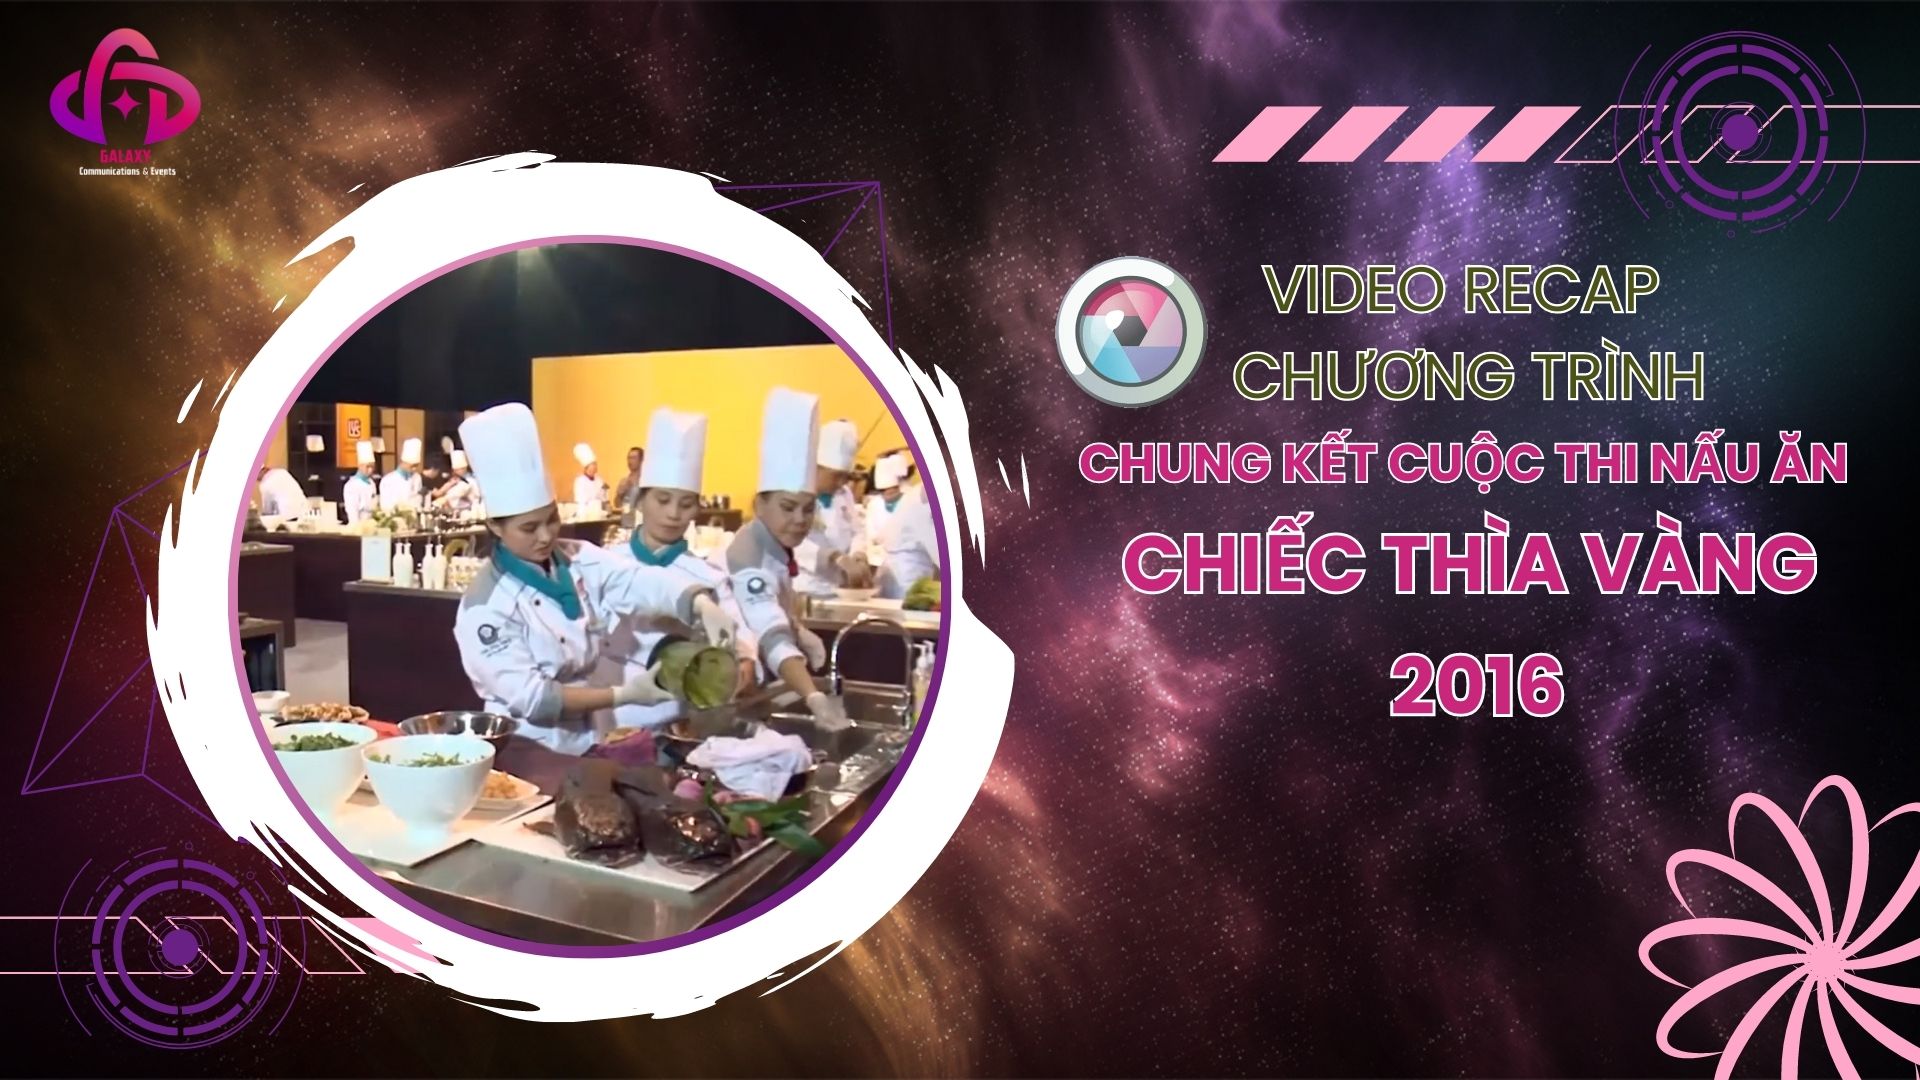 [Official Video Recap] Chương trình chung kết cuộc thi nấu ăn - Chiếc Thìa Vàng